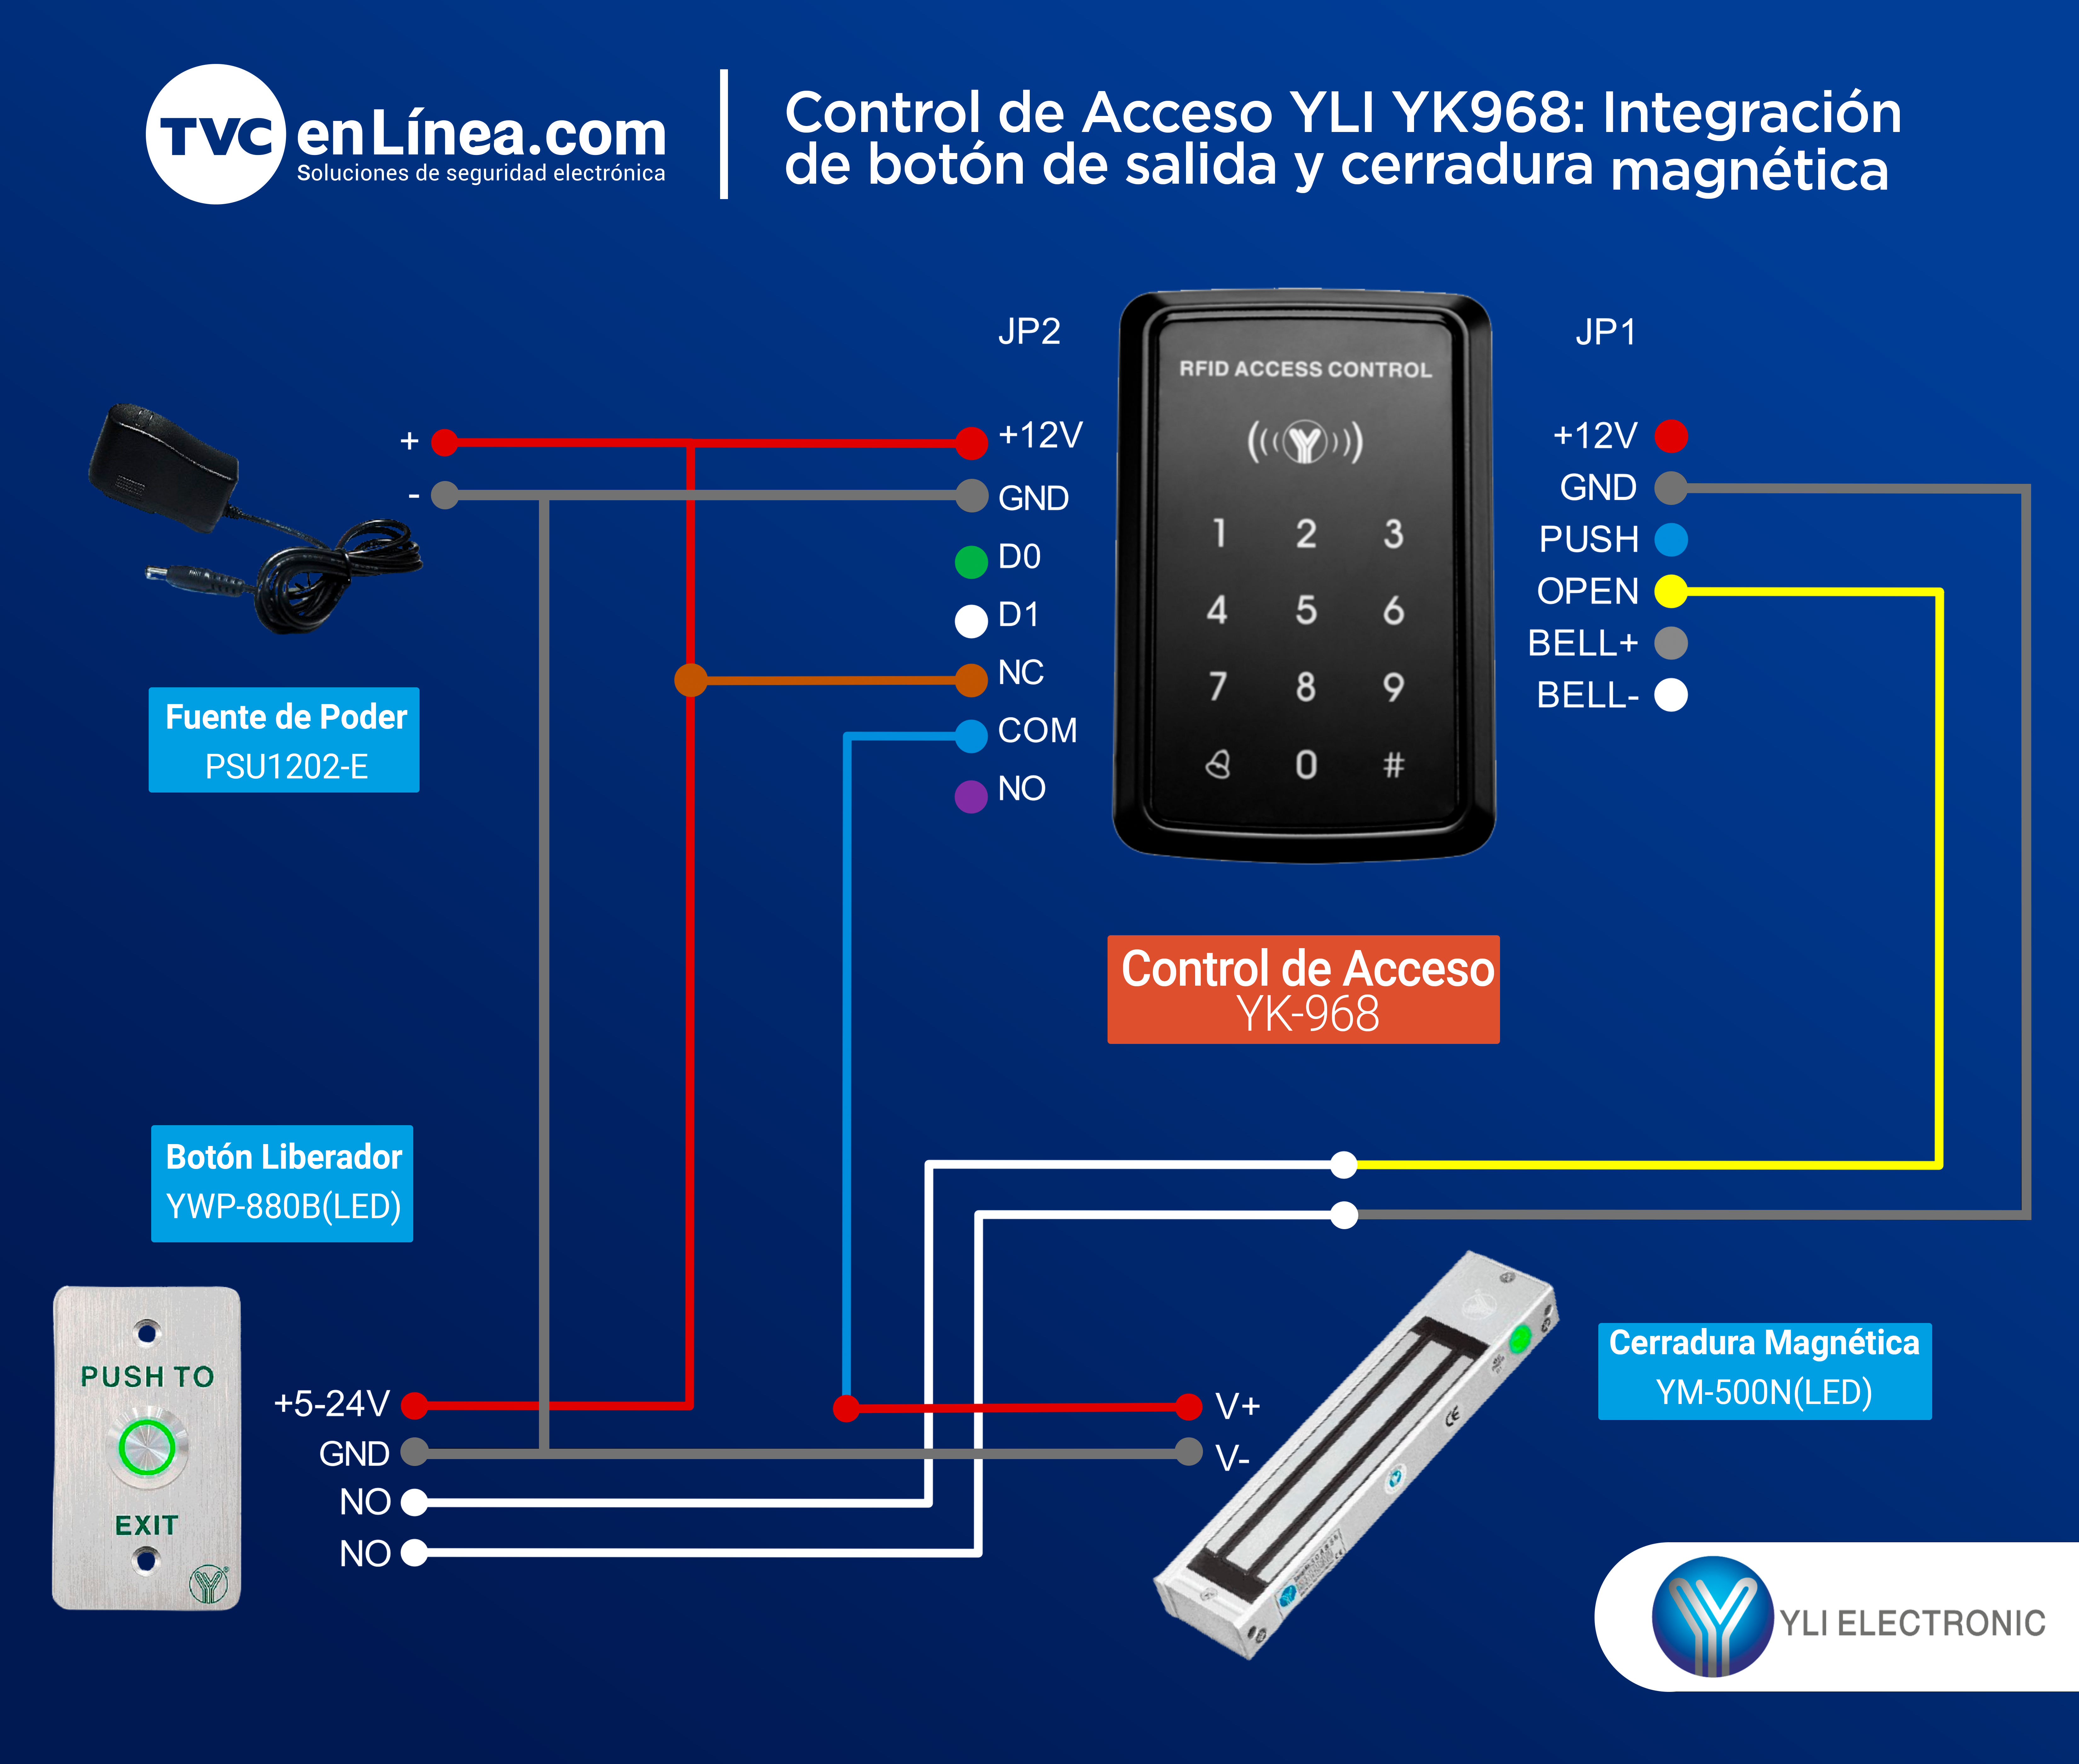 Integracón de botón de salida y cerradura magnética con teclado de control de acceso YK968